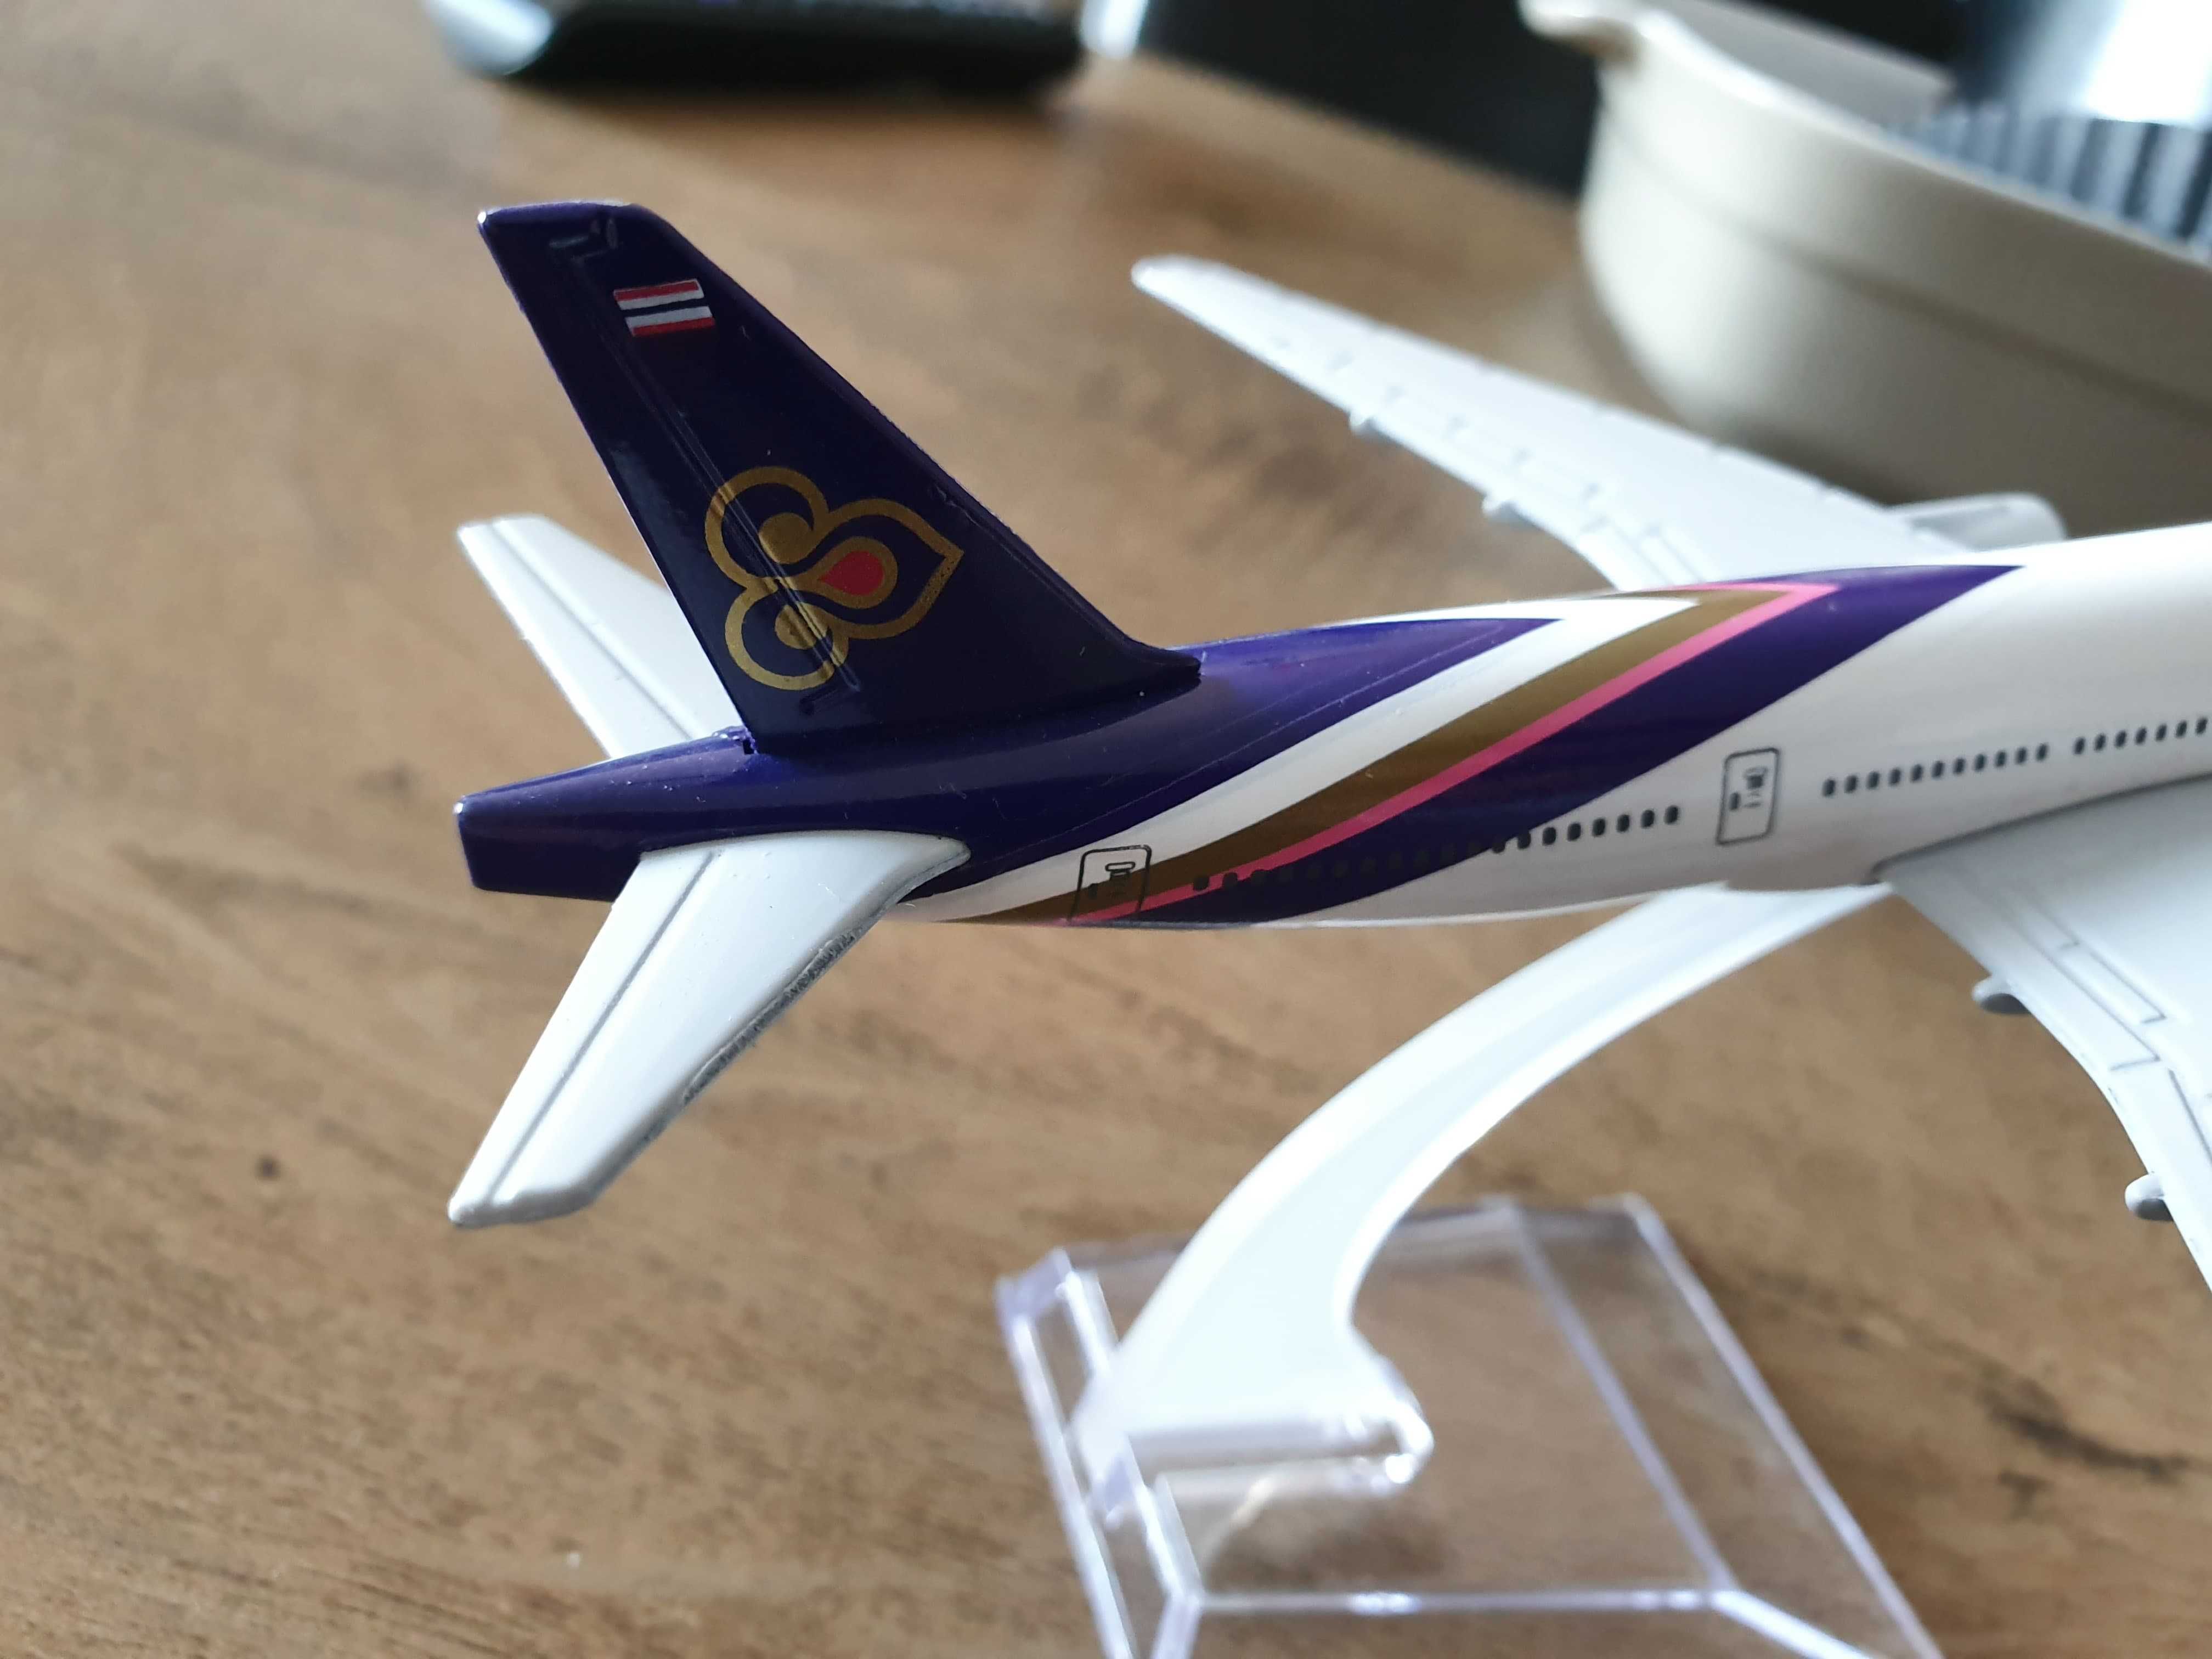 Macheta metalica de avion Thai Airways | Decoratie | Perfect pt cadou